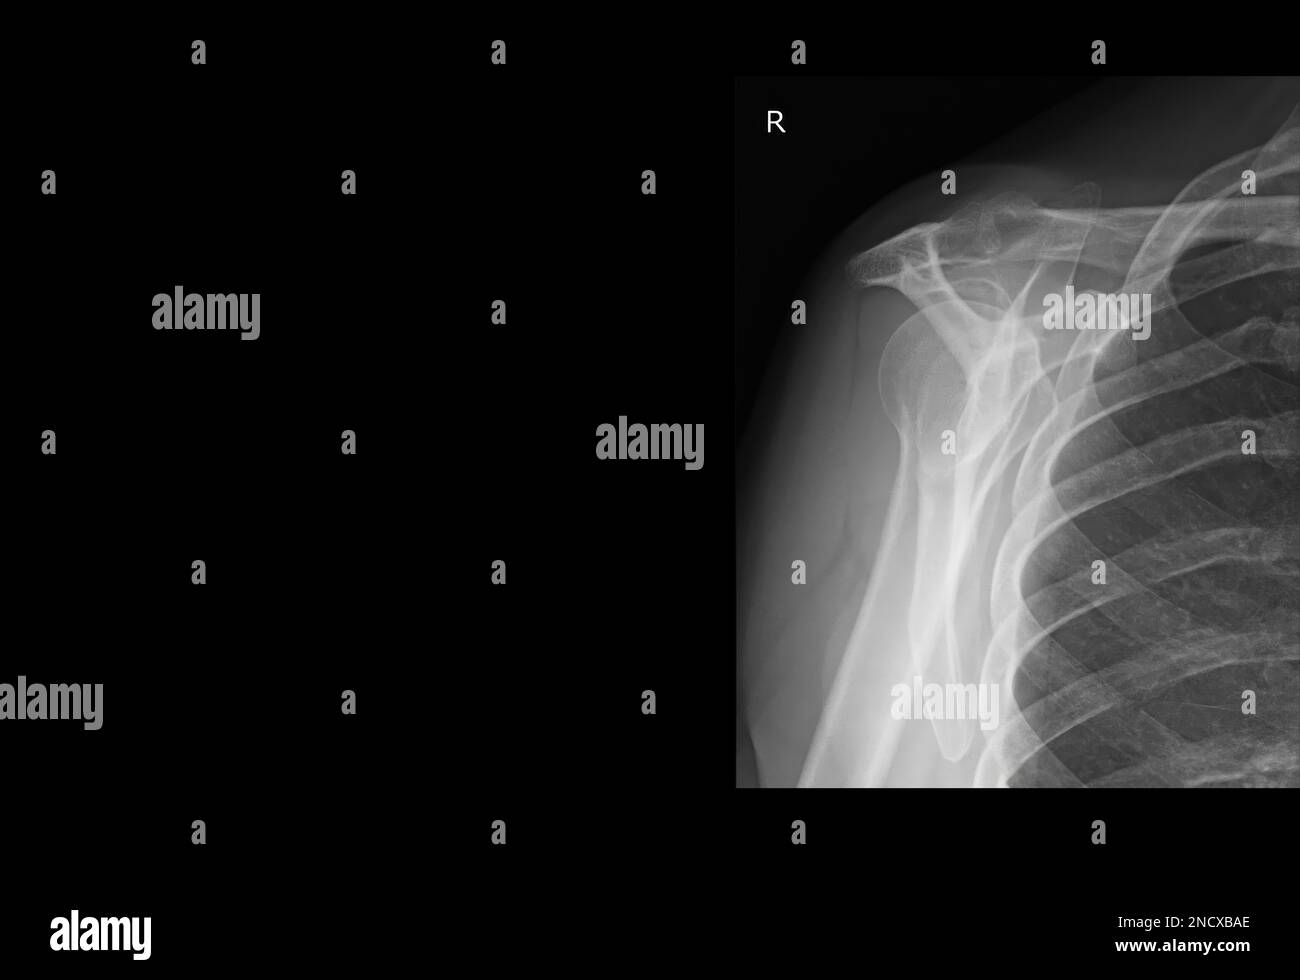 Radiographie d'une épaule humaine Banque D'Images